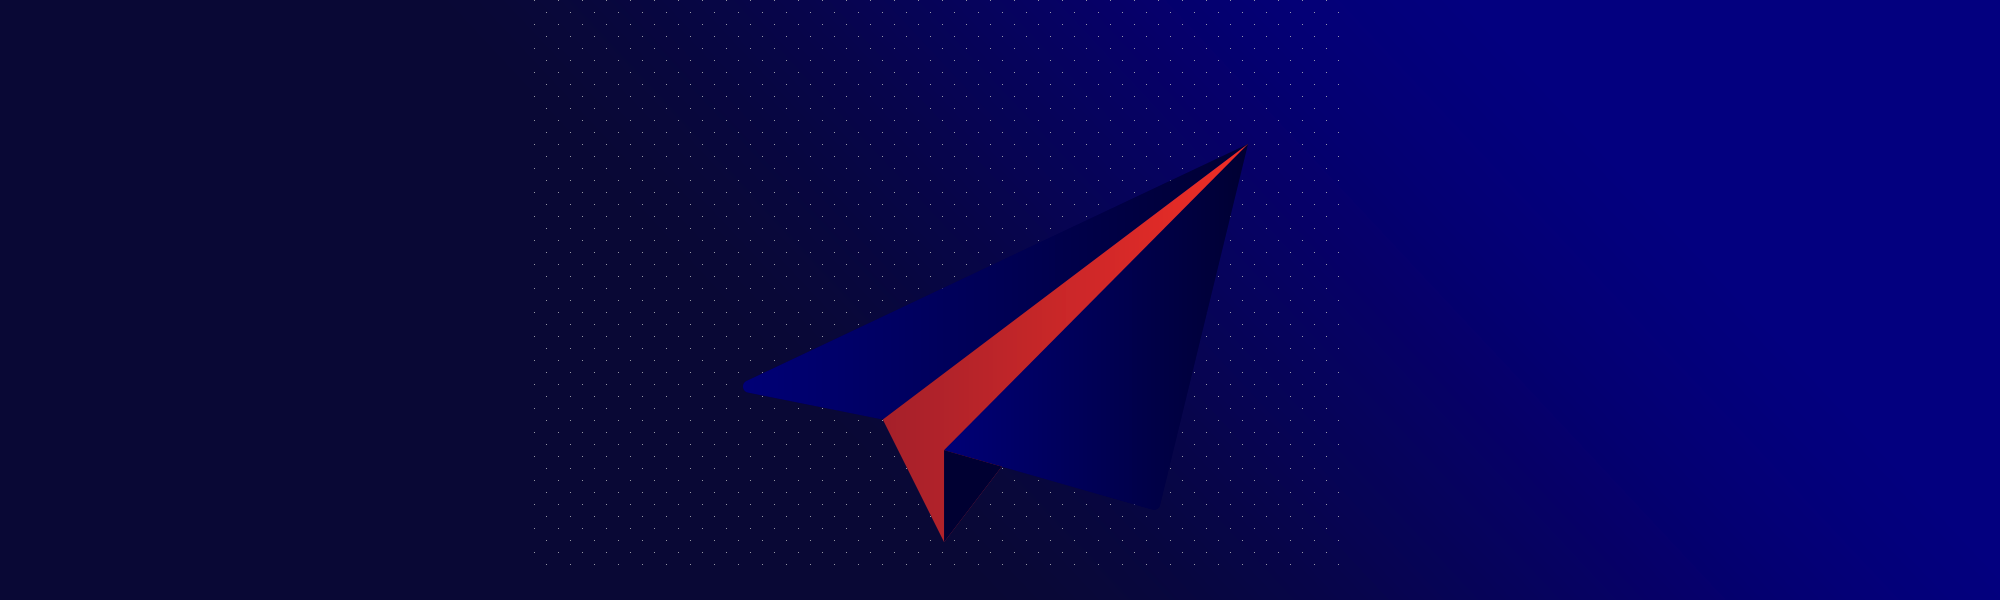 Illustration avec un avion en papier bleu et rouge